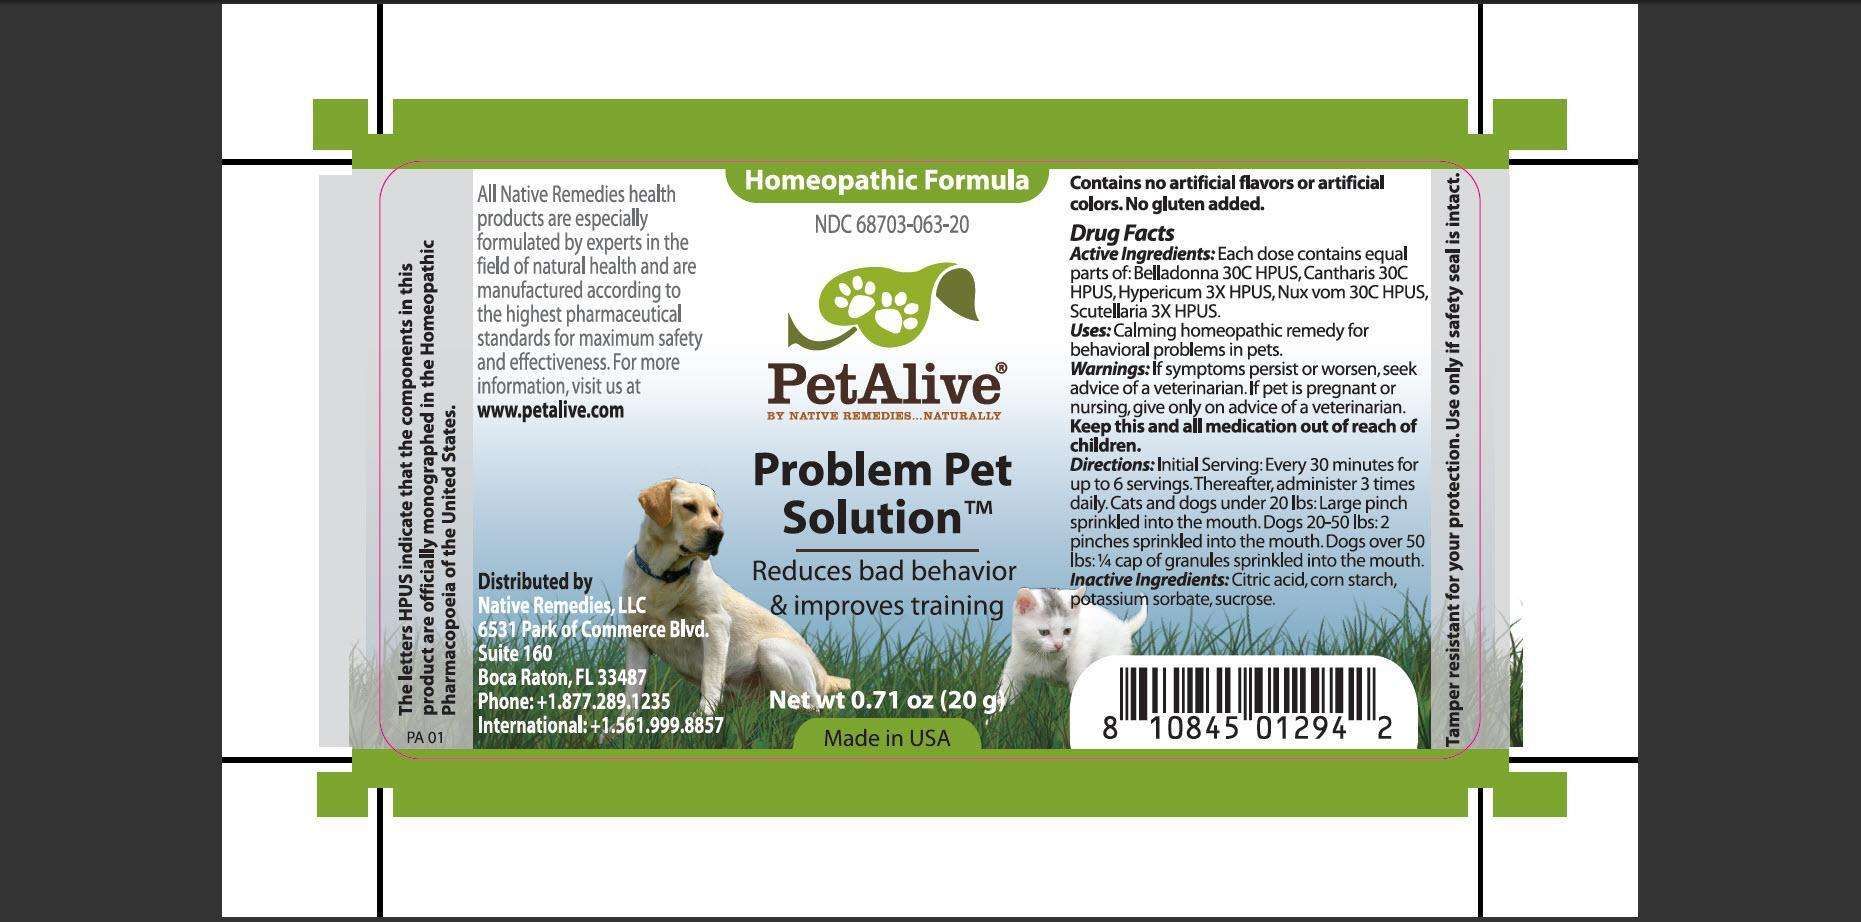 PetAlive Problem Pet Solution